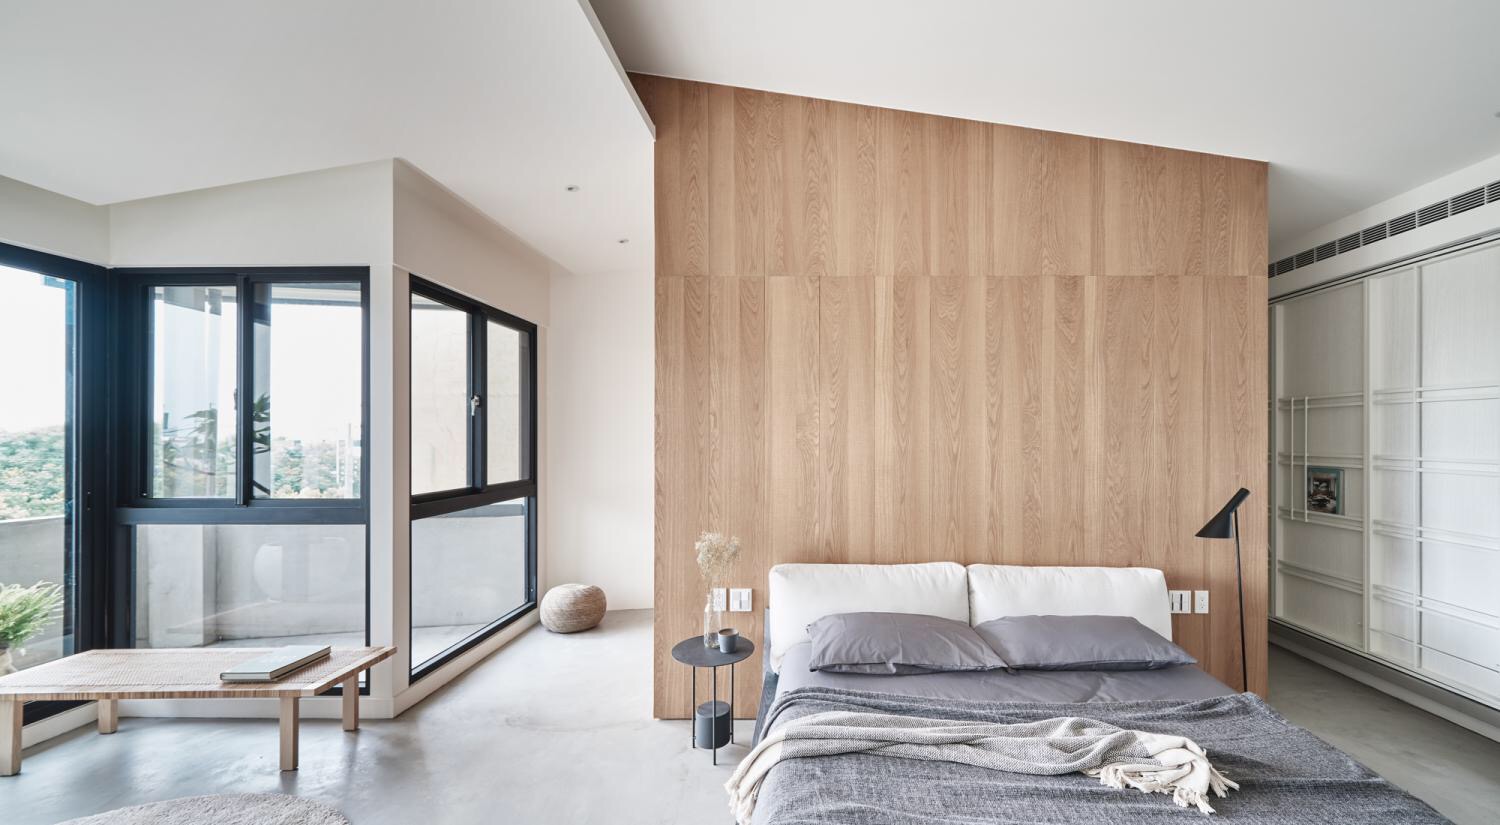 木质的背景墙使主卧平实而自然，搭配白色床头和灰色床品，层次感十足。